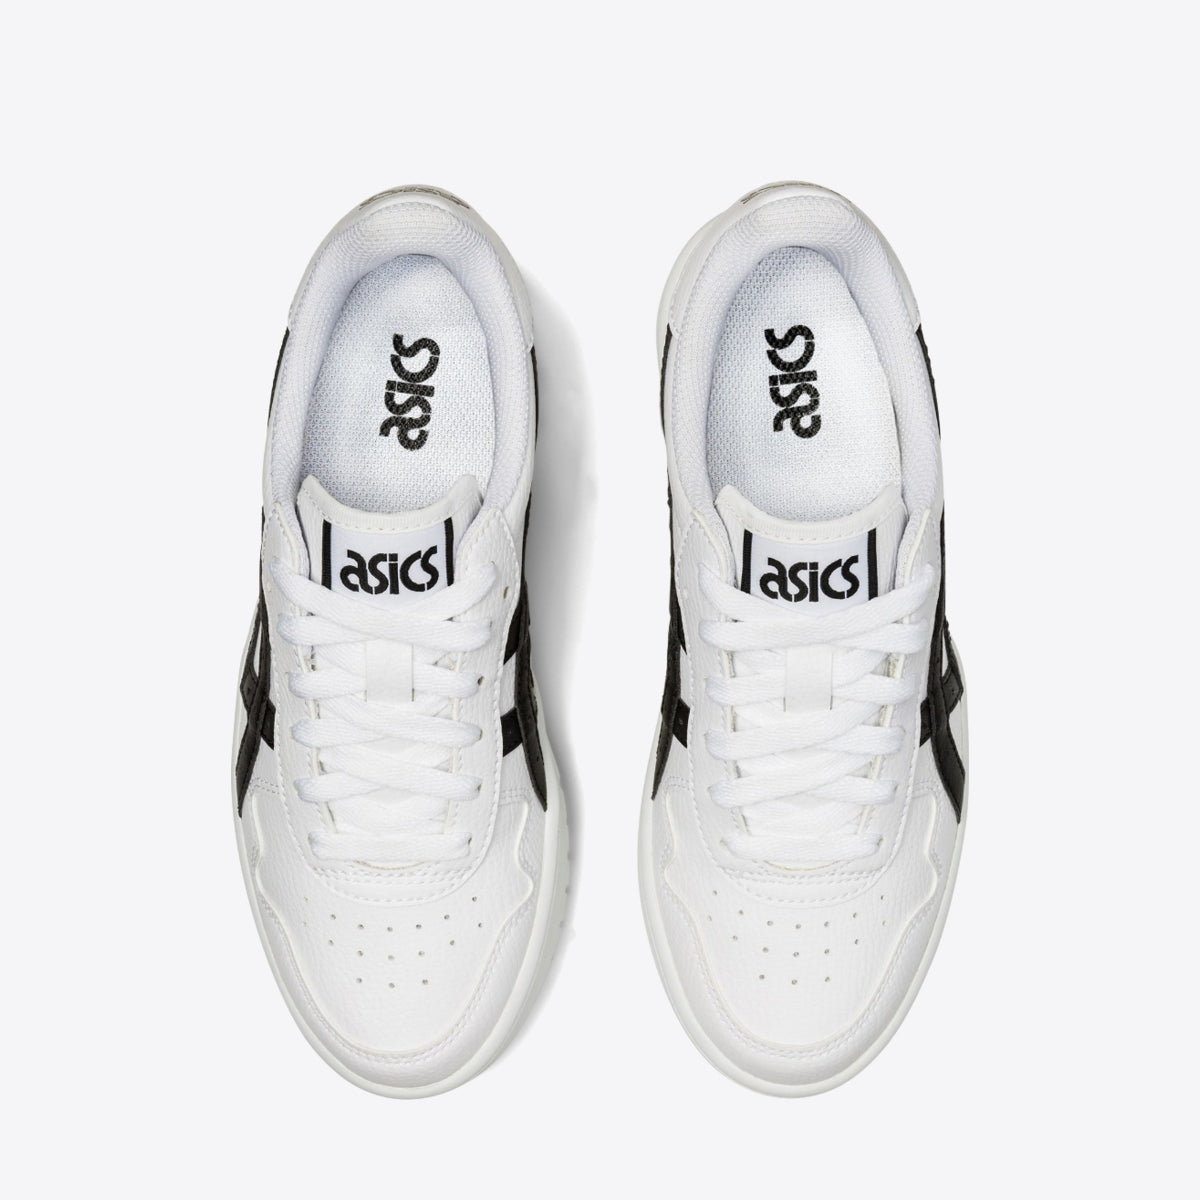 ASICS Japan S Platform Sneaker - Women's White/Black - Image 0